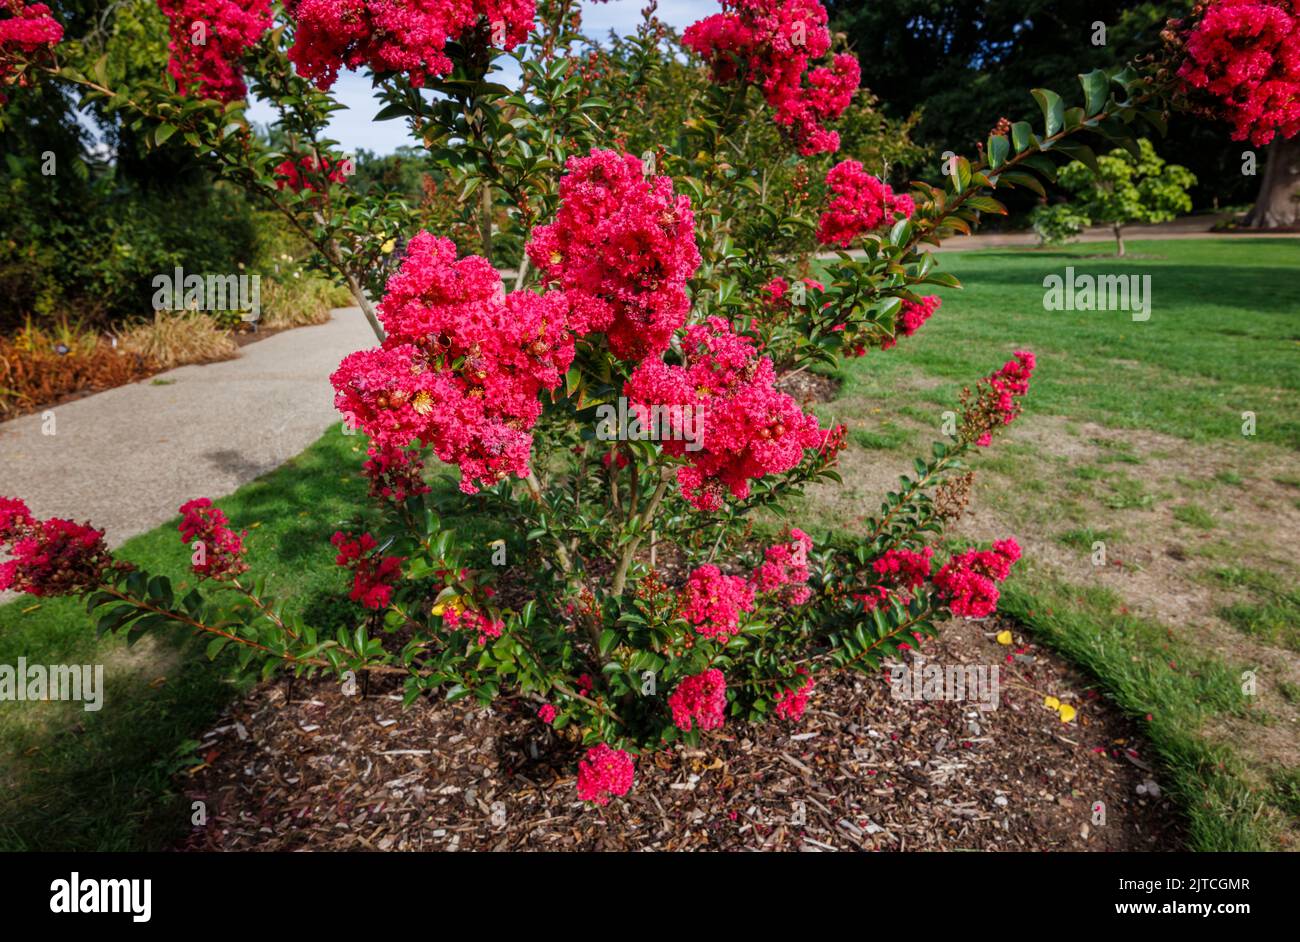 Rojo Lagerstroemia 'Tuscarora' o crape myrtle 'Tuscarora' con flores de color rojo a coral rosa en flor en RHS Garden, Wisley a finales de verano hasta principios de otoño Foto de stock